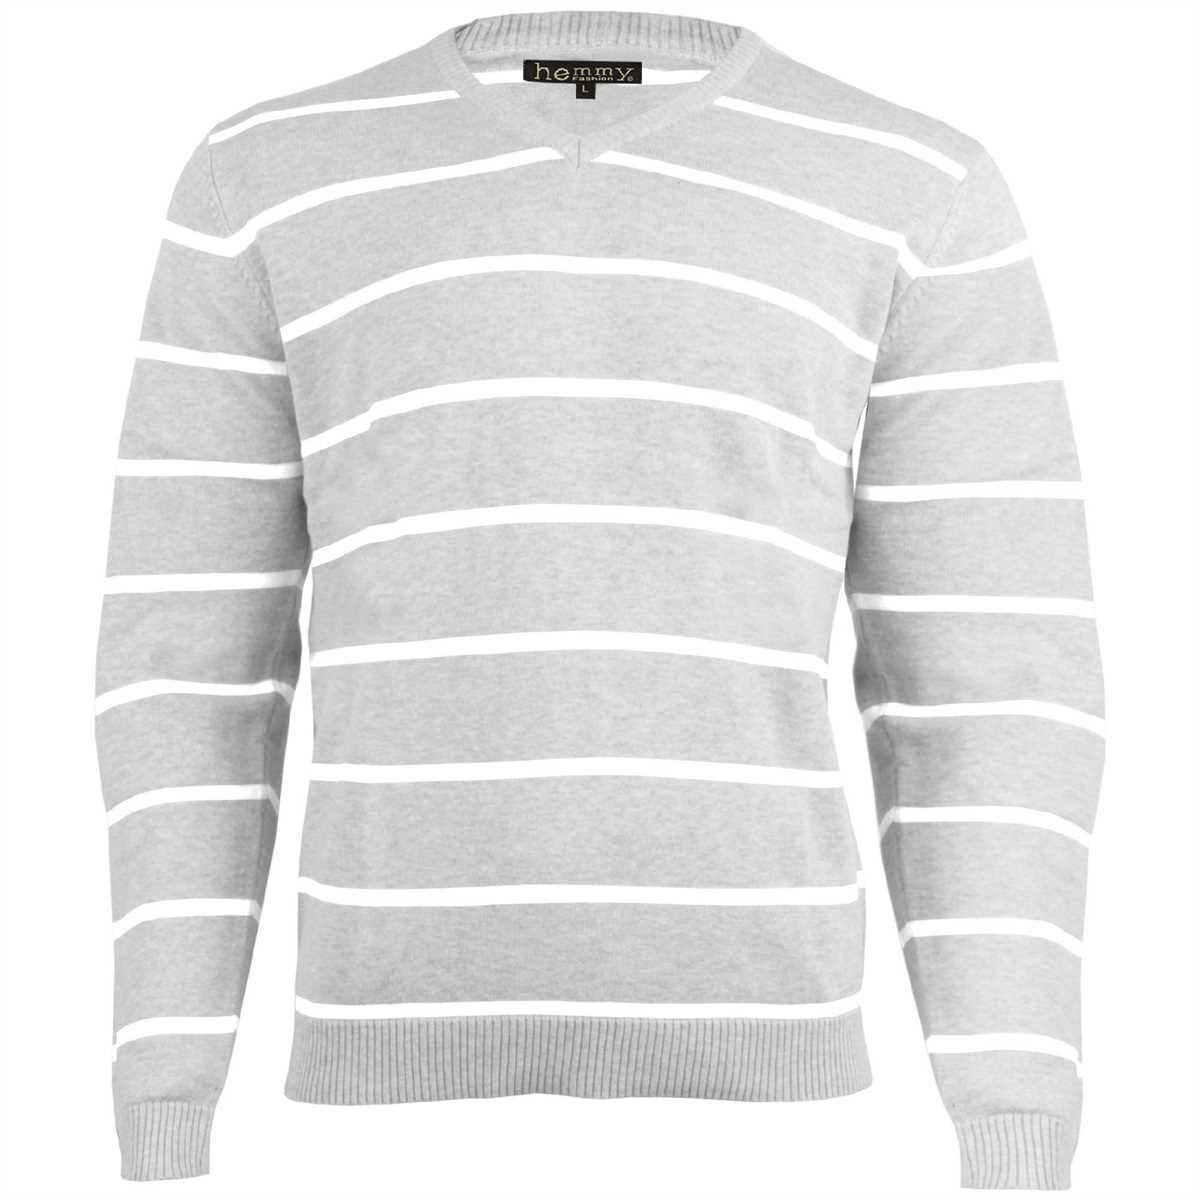 hemmy Fashion Streifenpullover Sweater Pulli Herrenpullover mit weißen Streifen, versch. Ausführungen und Größen, Grau